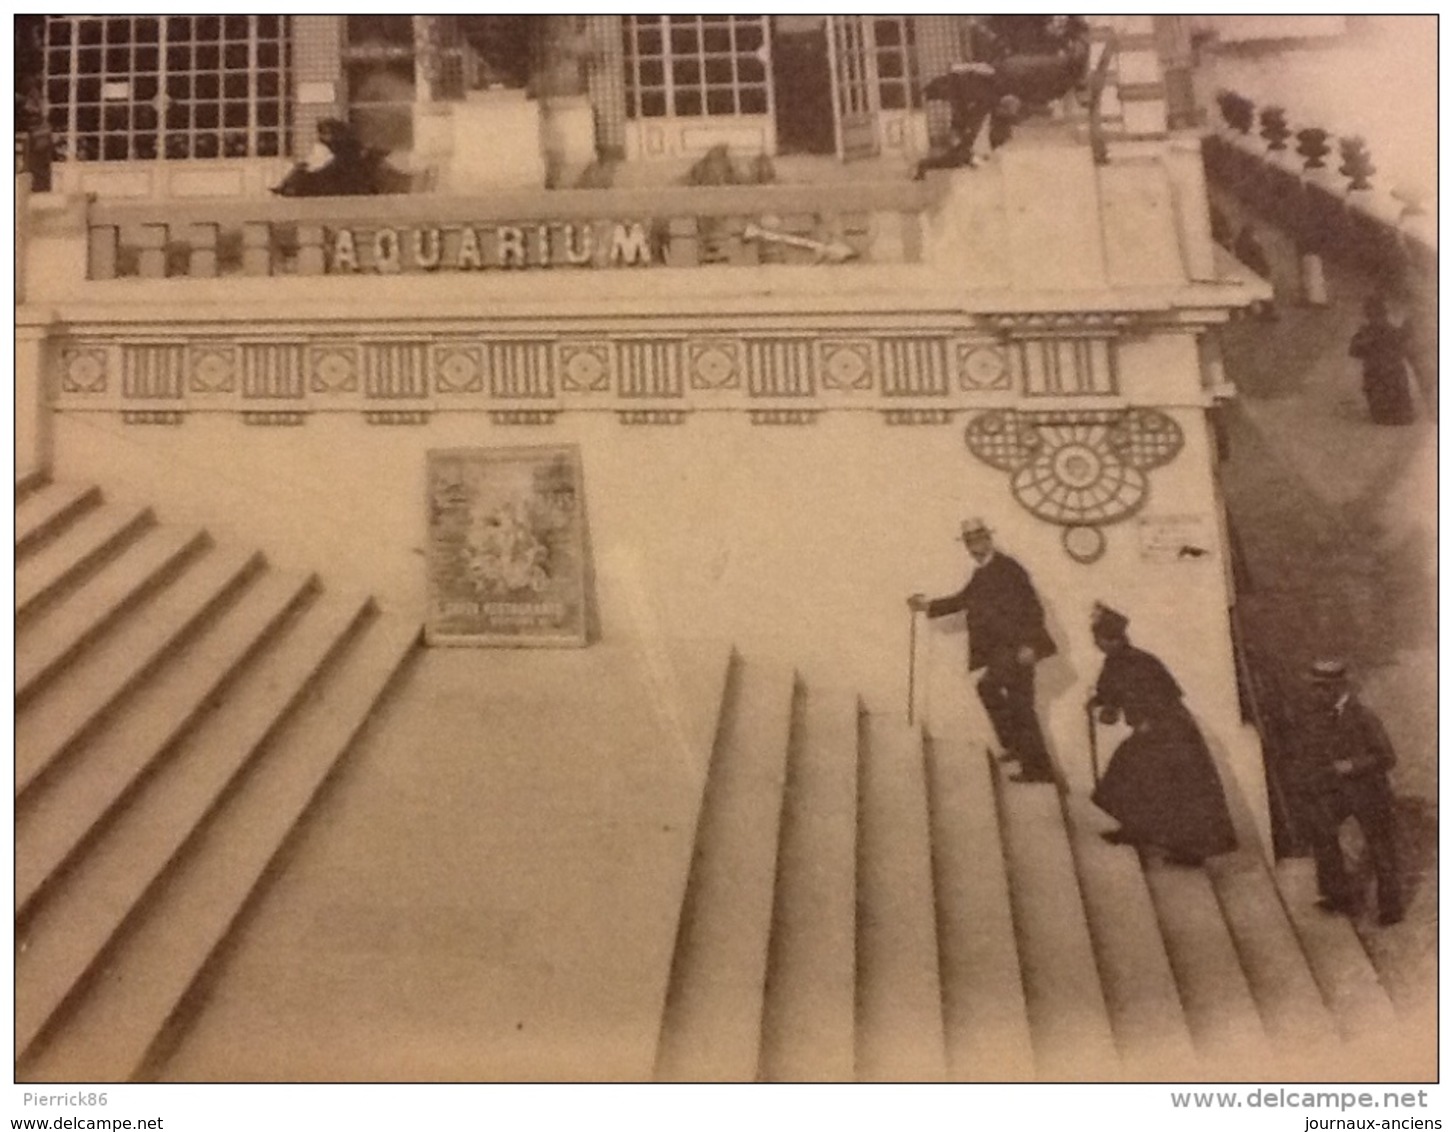 SUPERBE PHOTO ( HÉLIOTYPIE ) PARIS 1900 PALAIS DE L'HORTICULTURE PARIS 1900 TAVERNE DE L'AQUARIUM - Documents Historiques